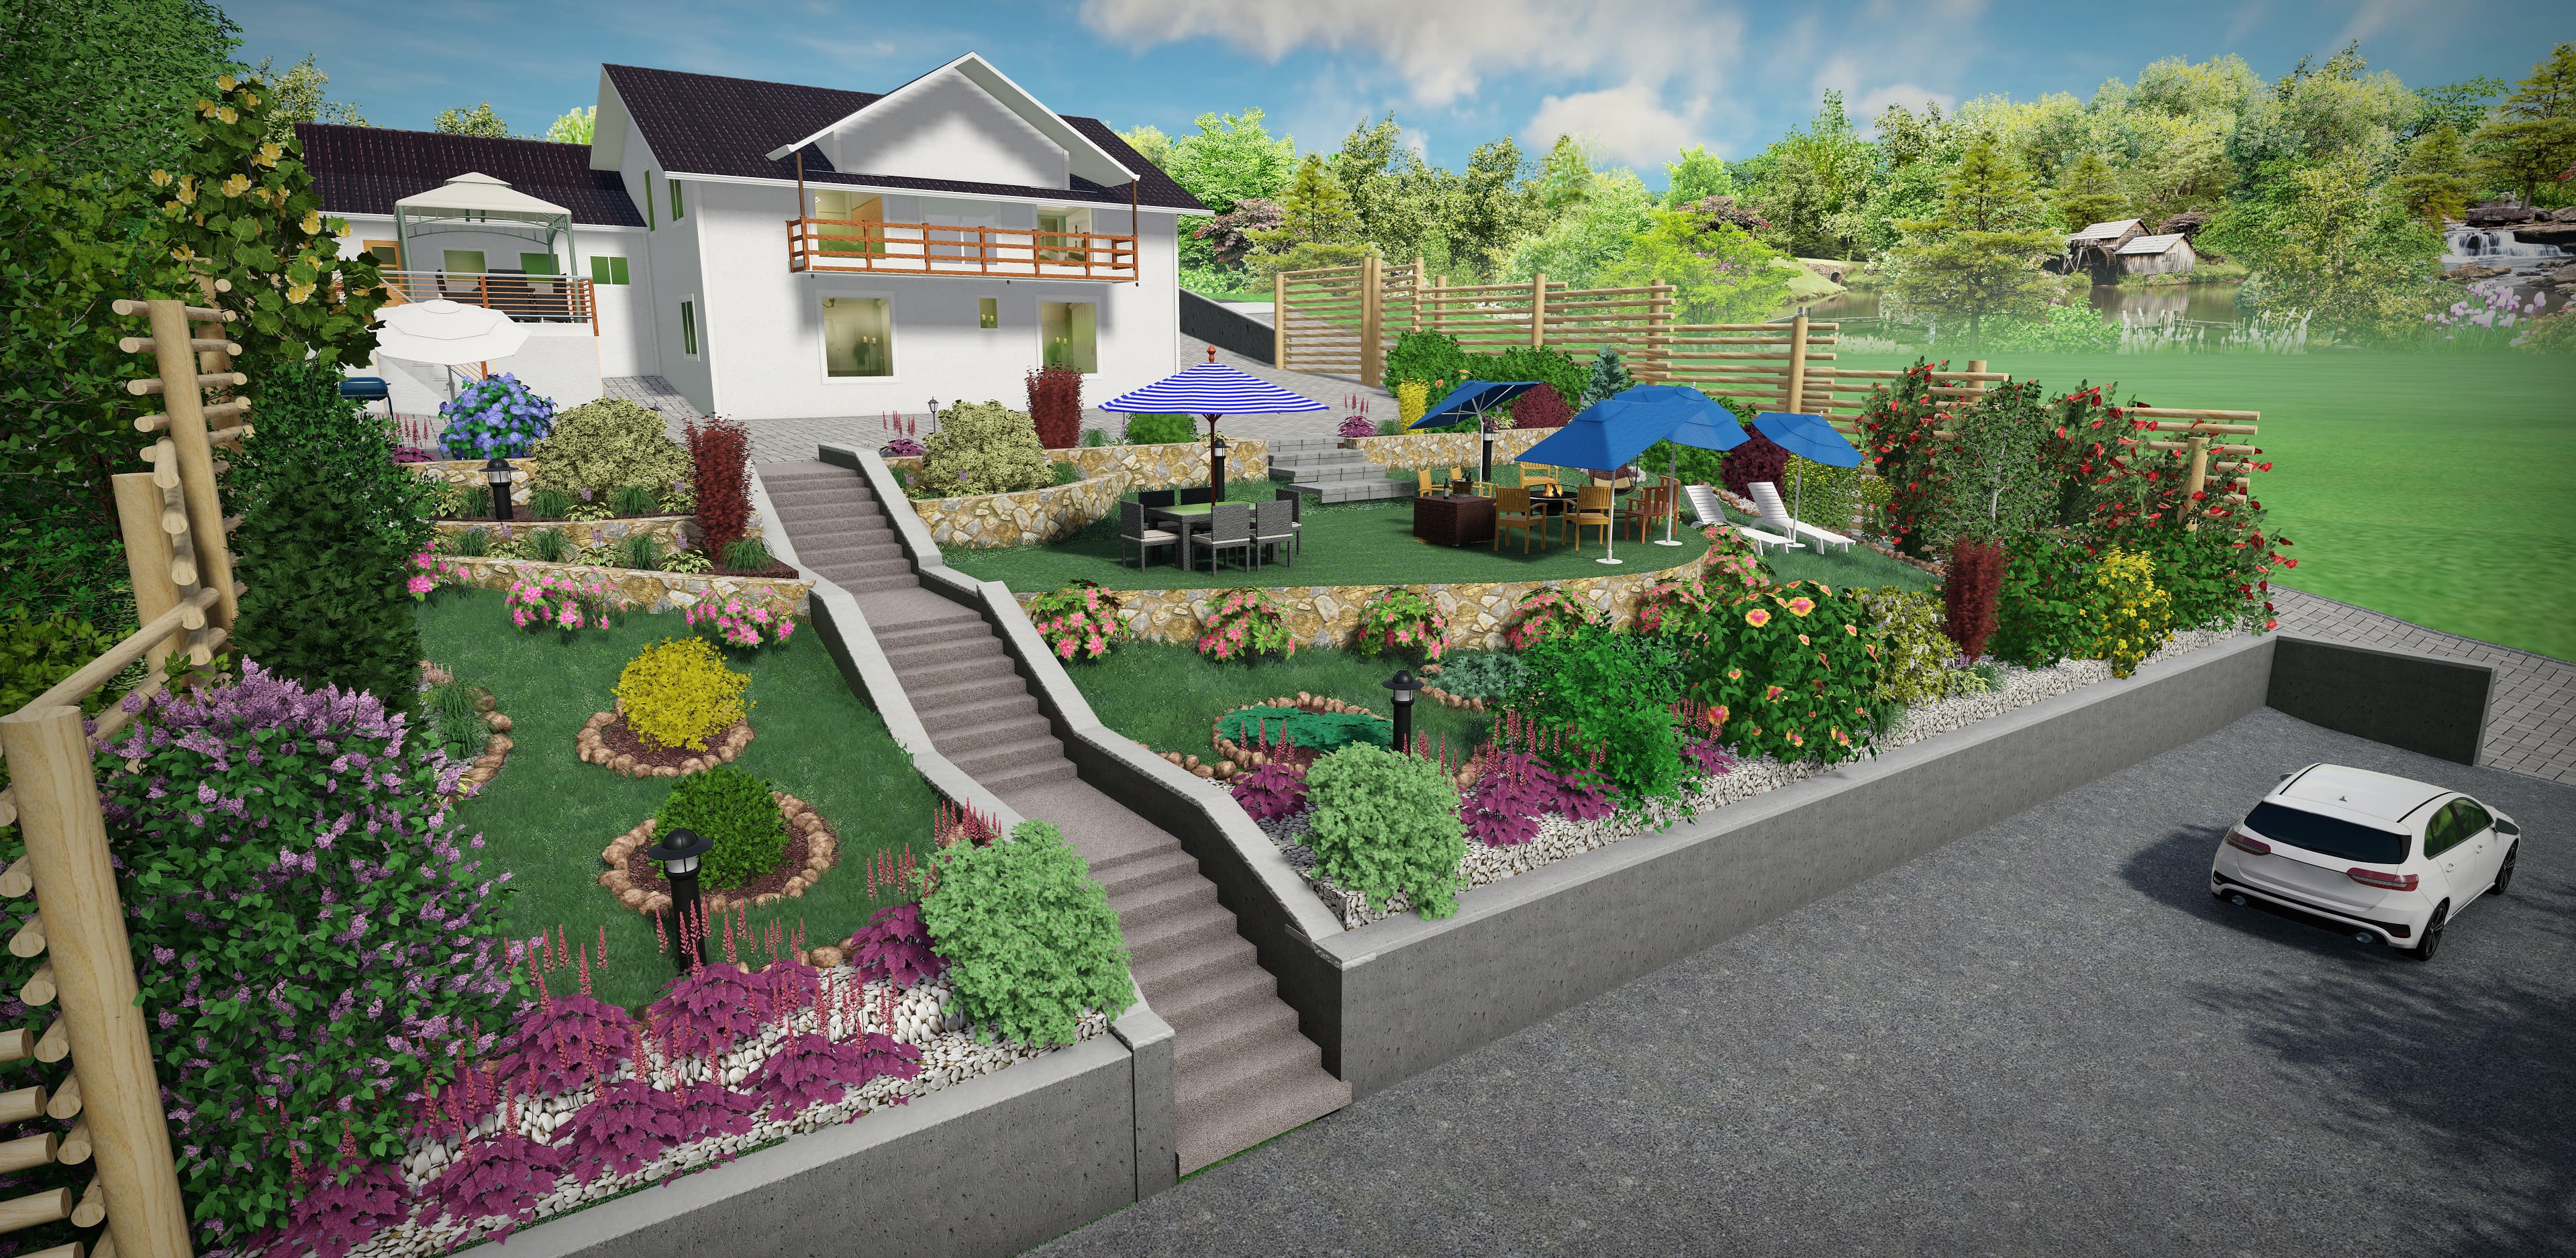 Servicii de Grădinărit, Proiectare Peisagistica si vanzare Piatra decorativa pentru gradina